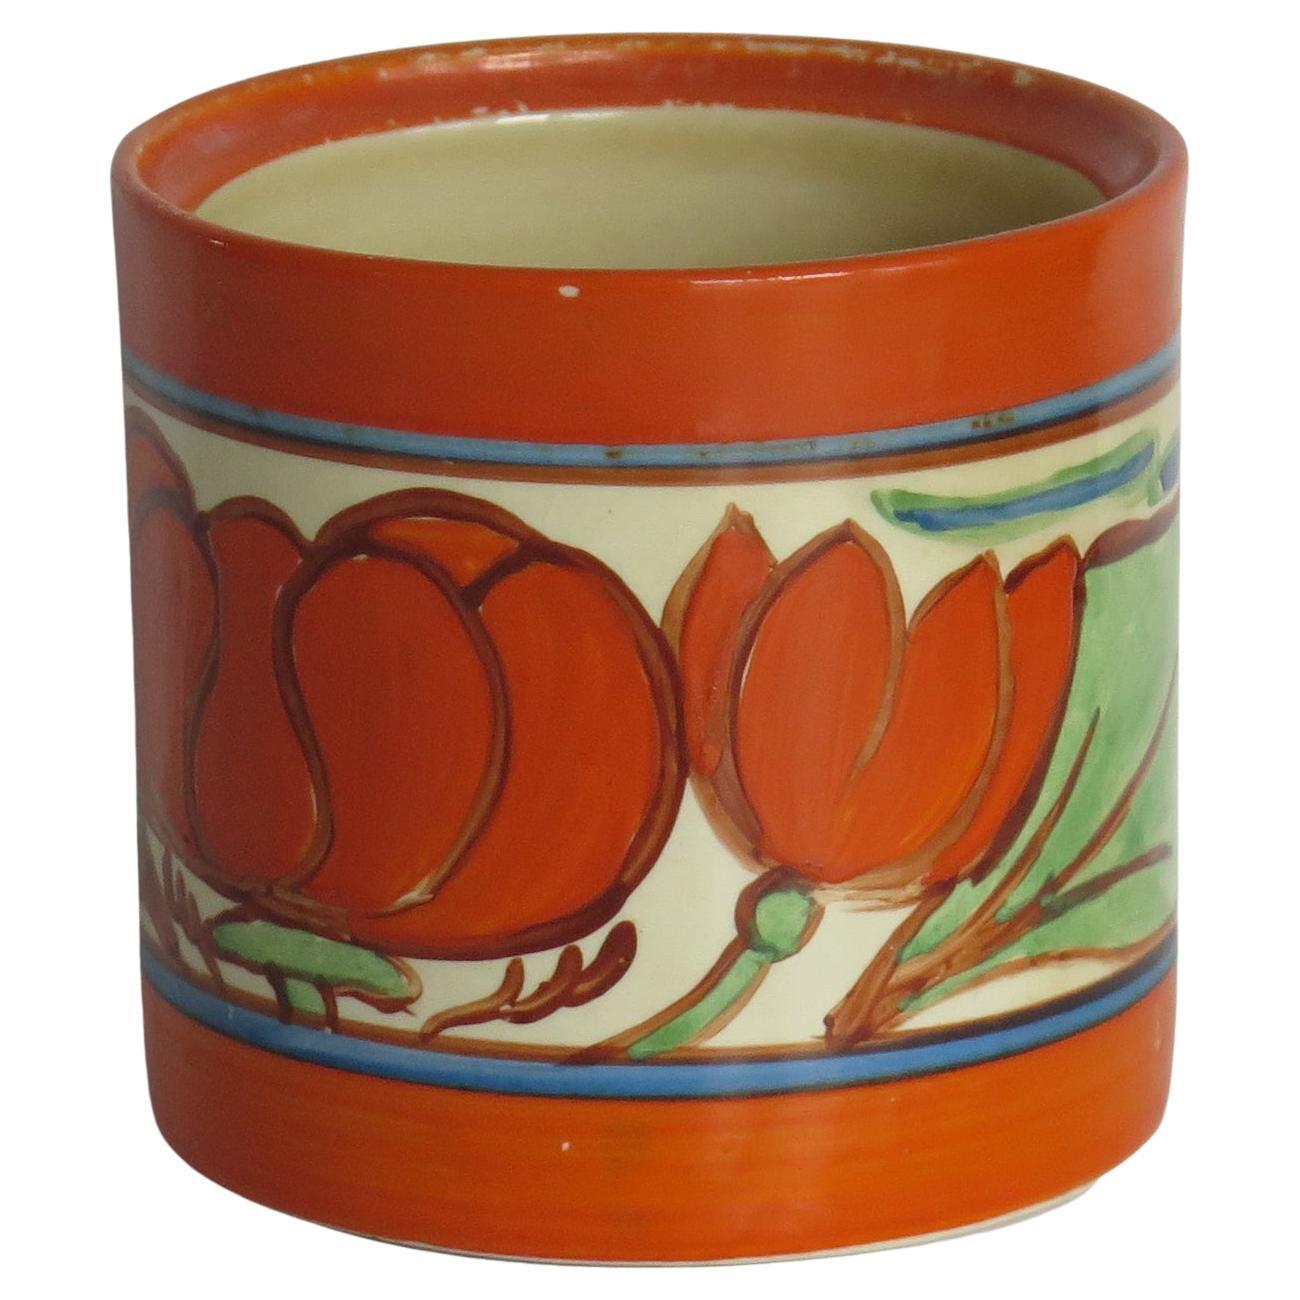 Clarice Cliff Pot in Lily Orange Fantasque Pattern, Art Deco period circa 1929 For Sale